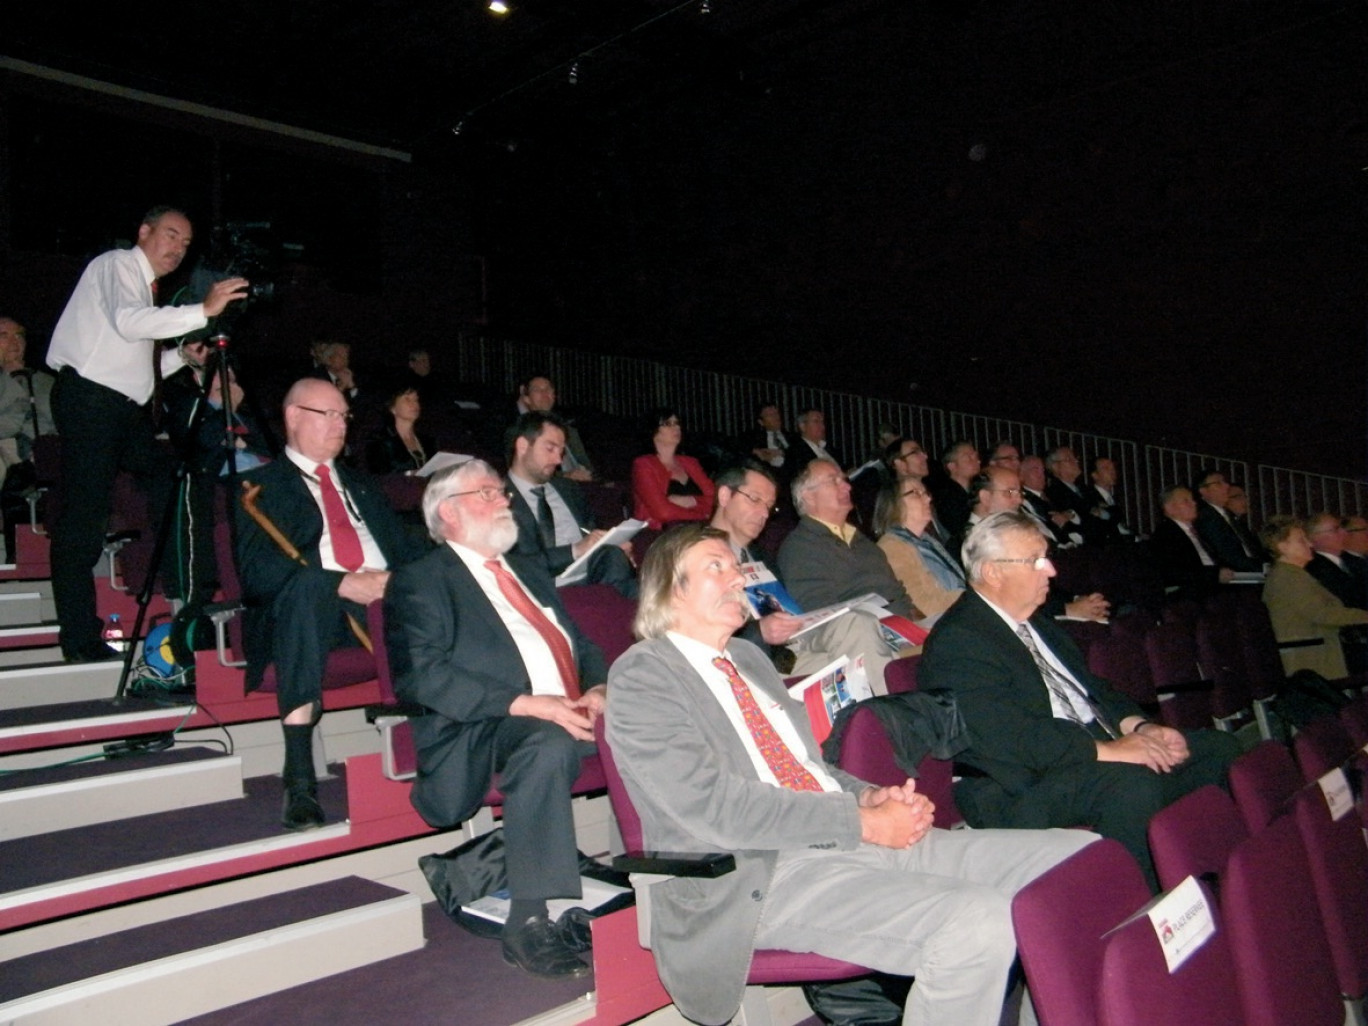 Une centaine de personnes étaient présentes à l’auditorium de la Cité de la dentelle et de la mode à Calais.